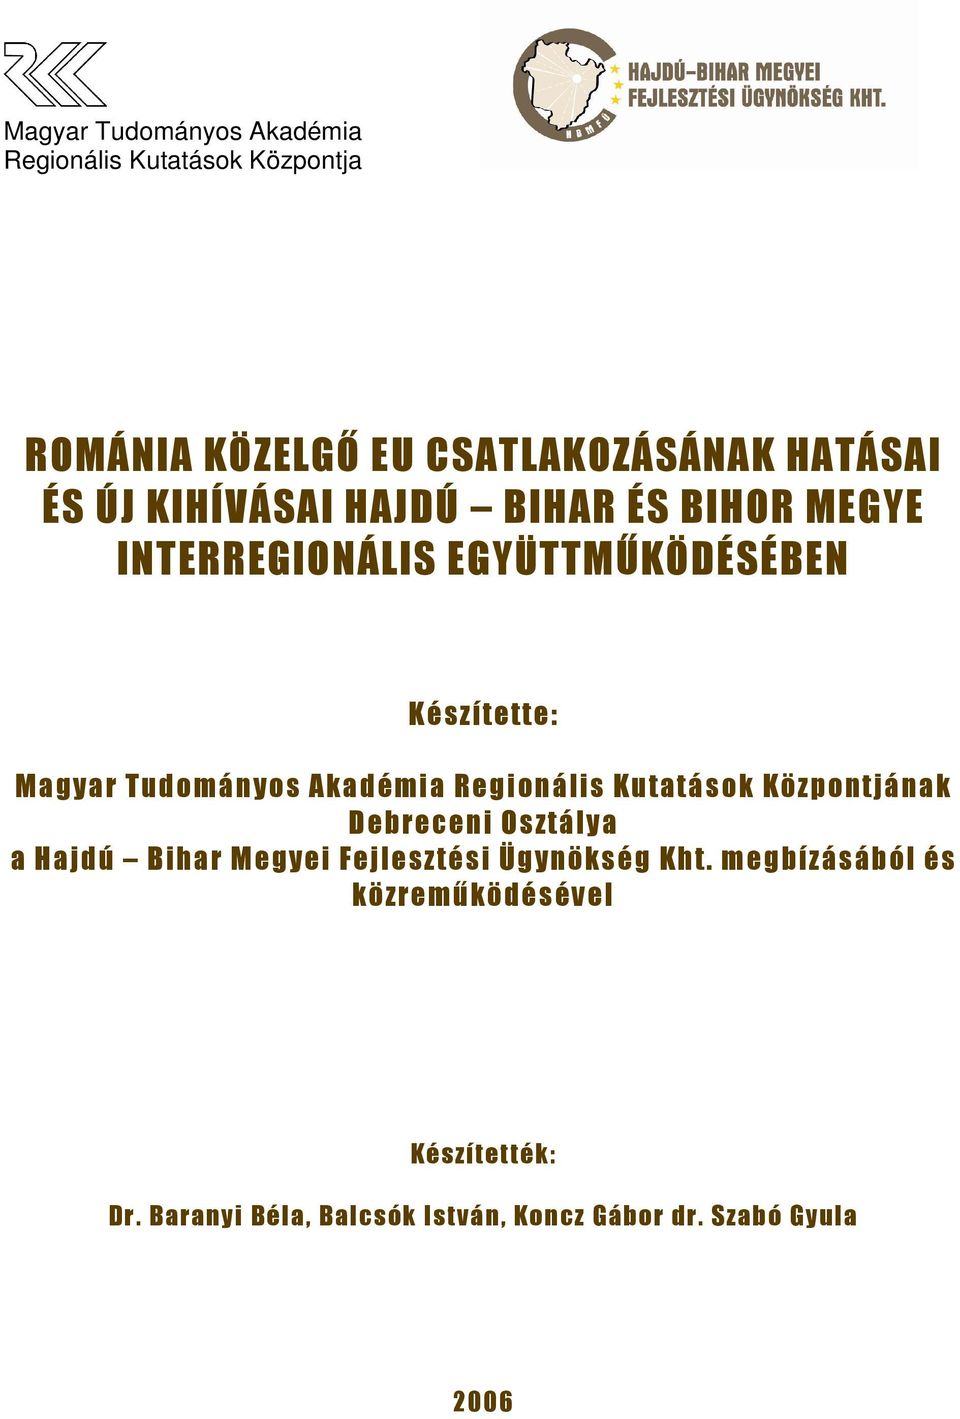 Regionális Kutatások Központjának Debreceni Osztálya a Hajdú Bihar Megyei Fejlesztési Ügynökség Kht.